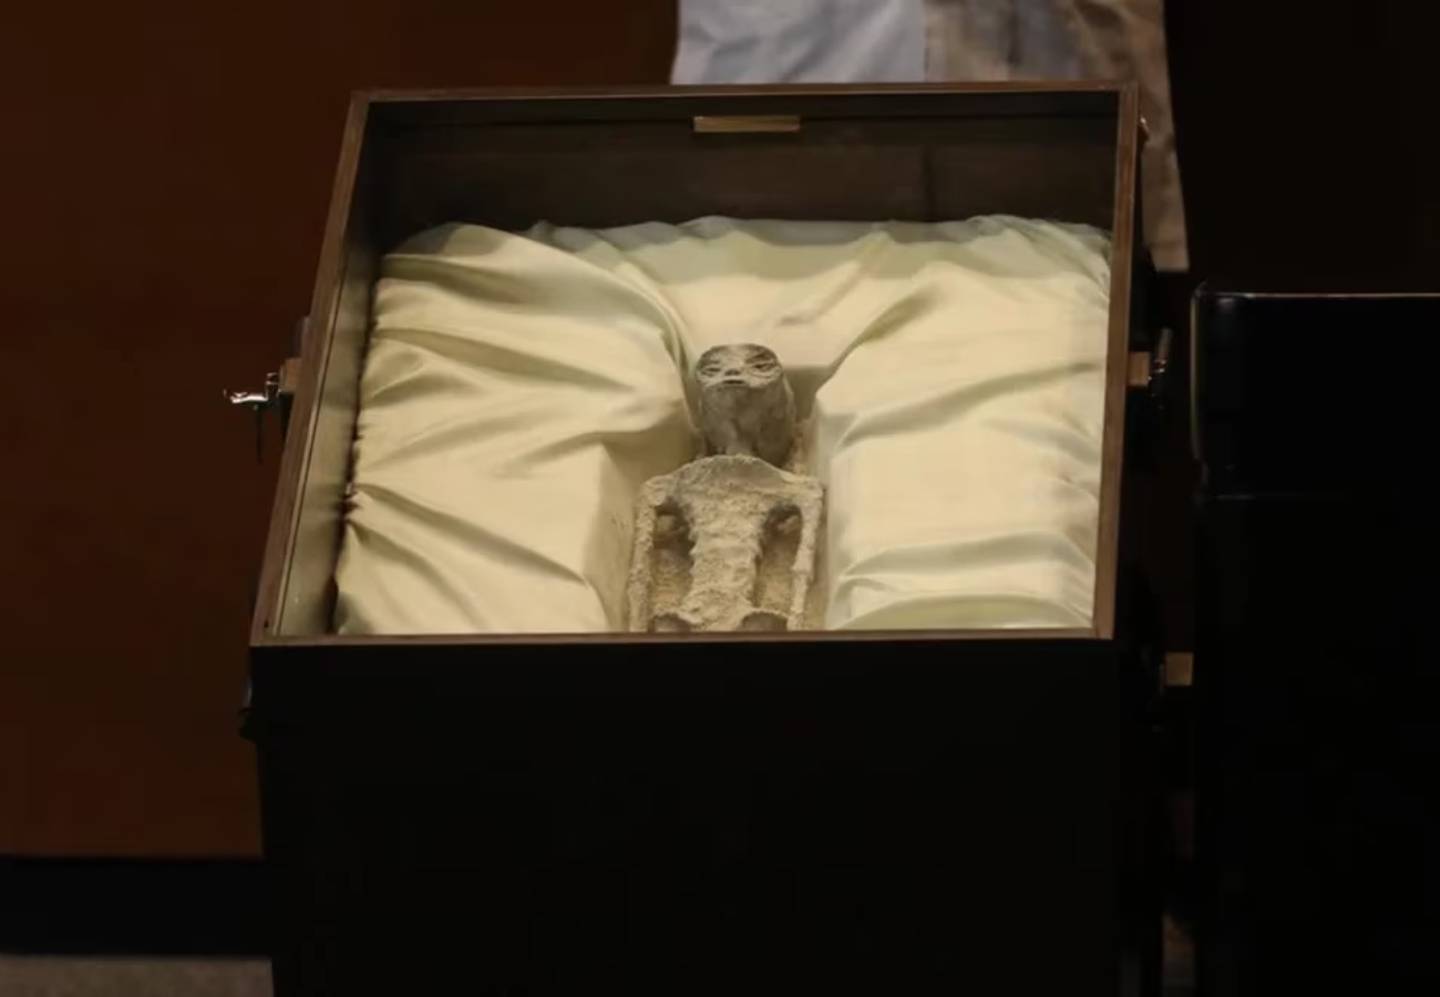 Supuesto cuerpo de alienígena en una caja, sobre una almohadilla blanca